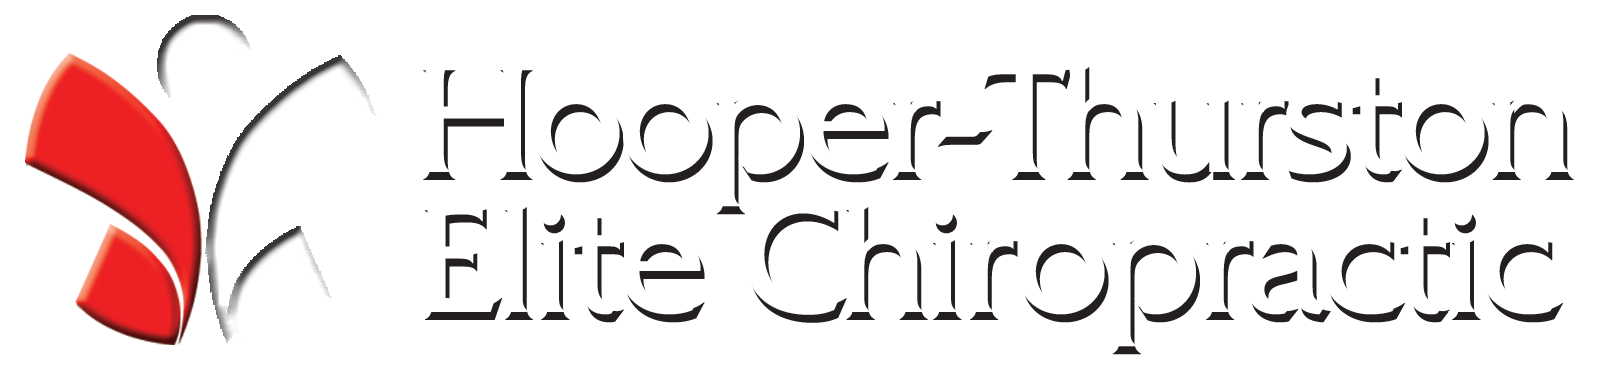 Elite Chiropractic Center of Wilson - Dr. Hooper